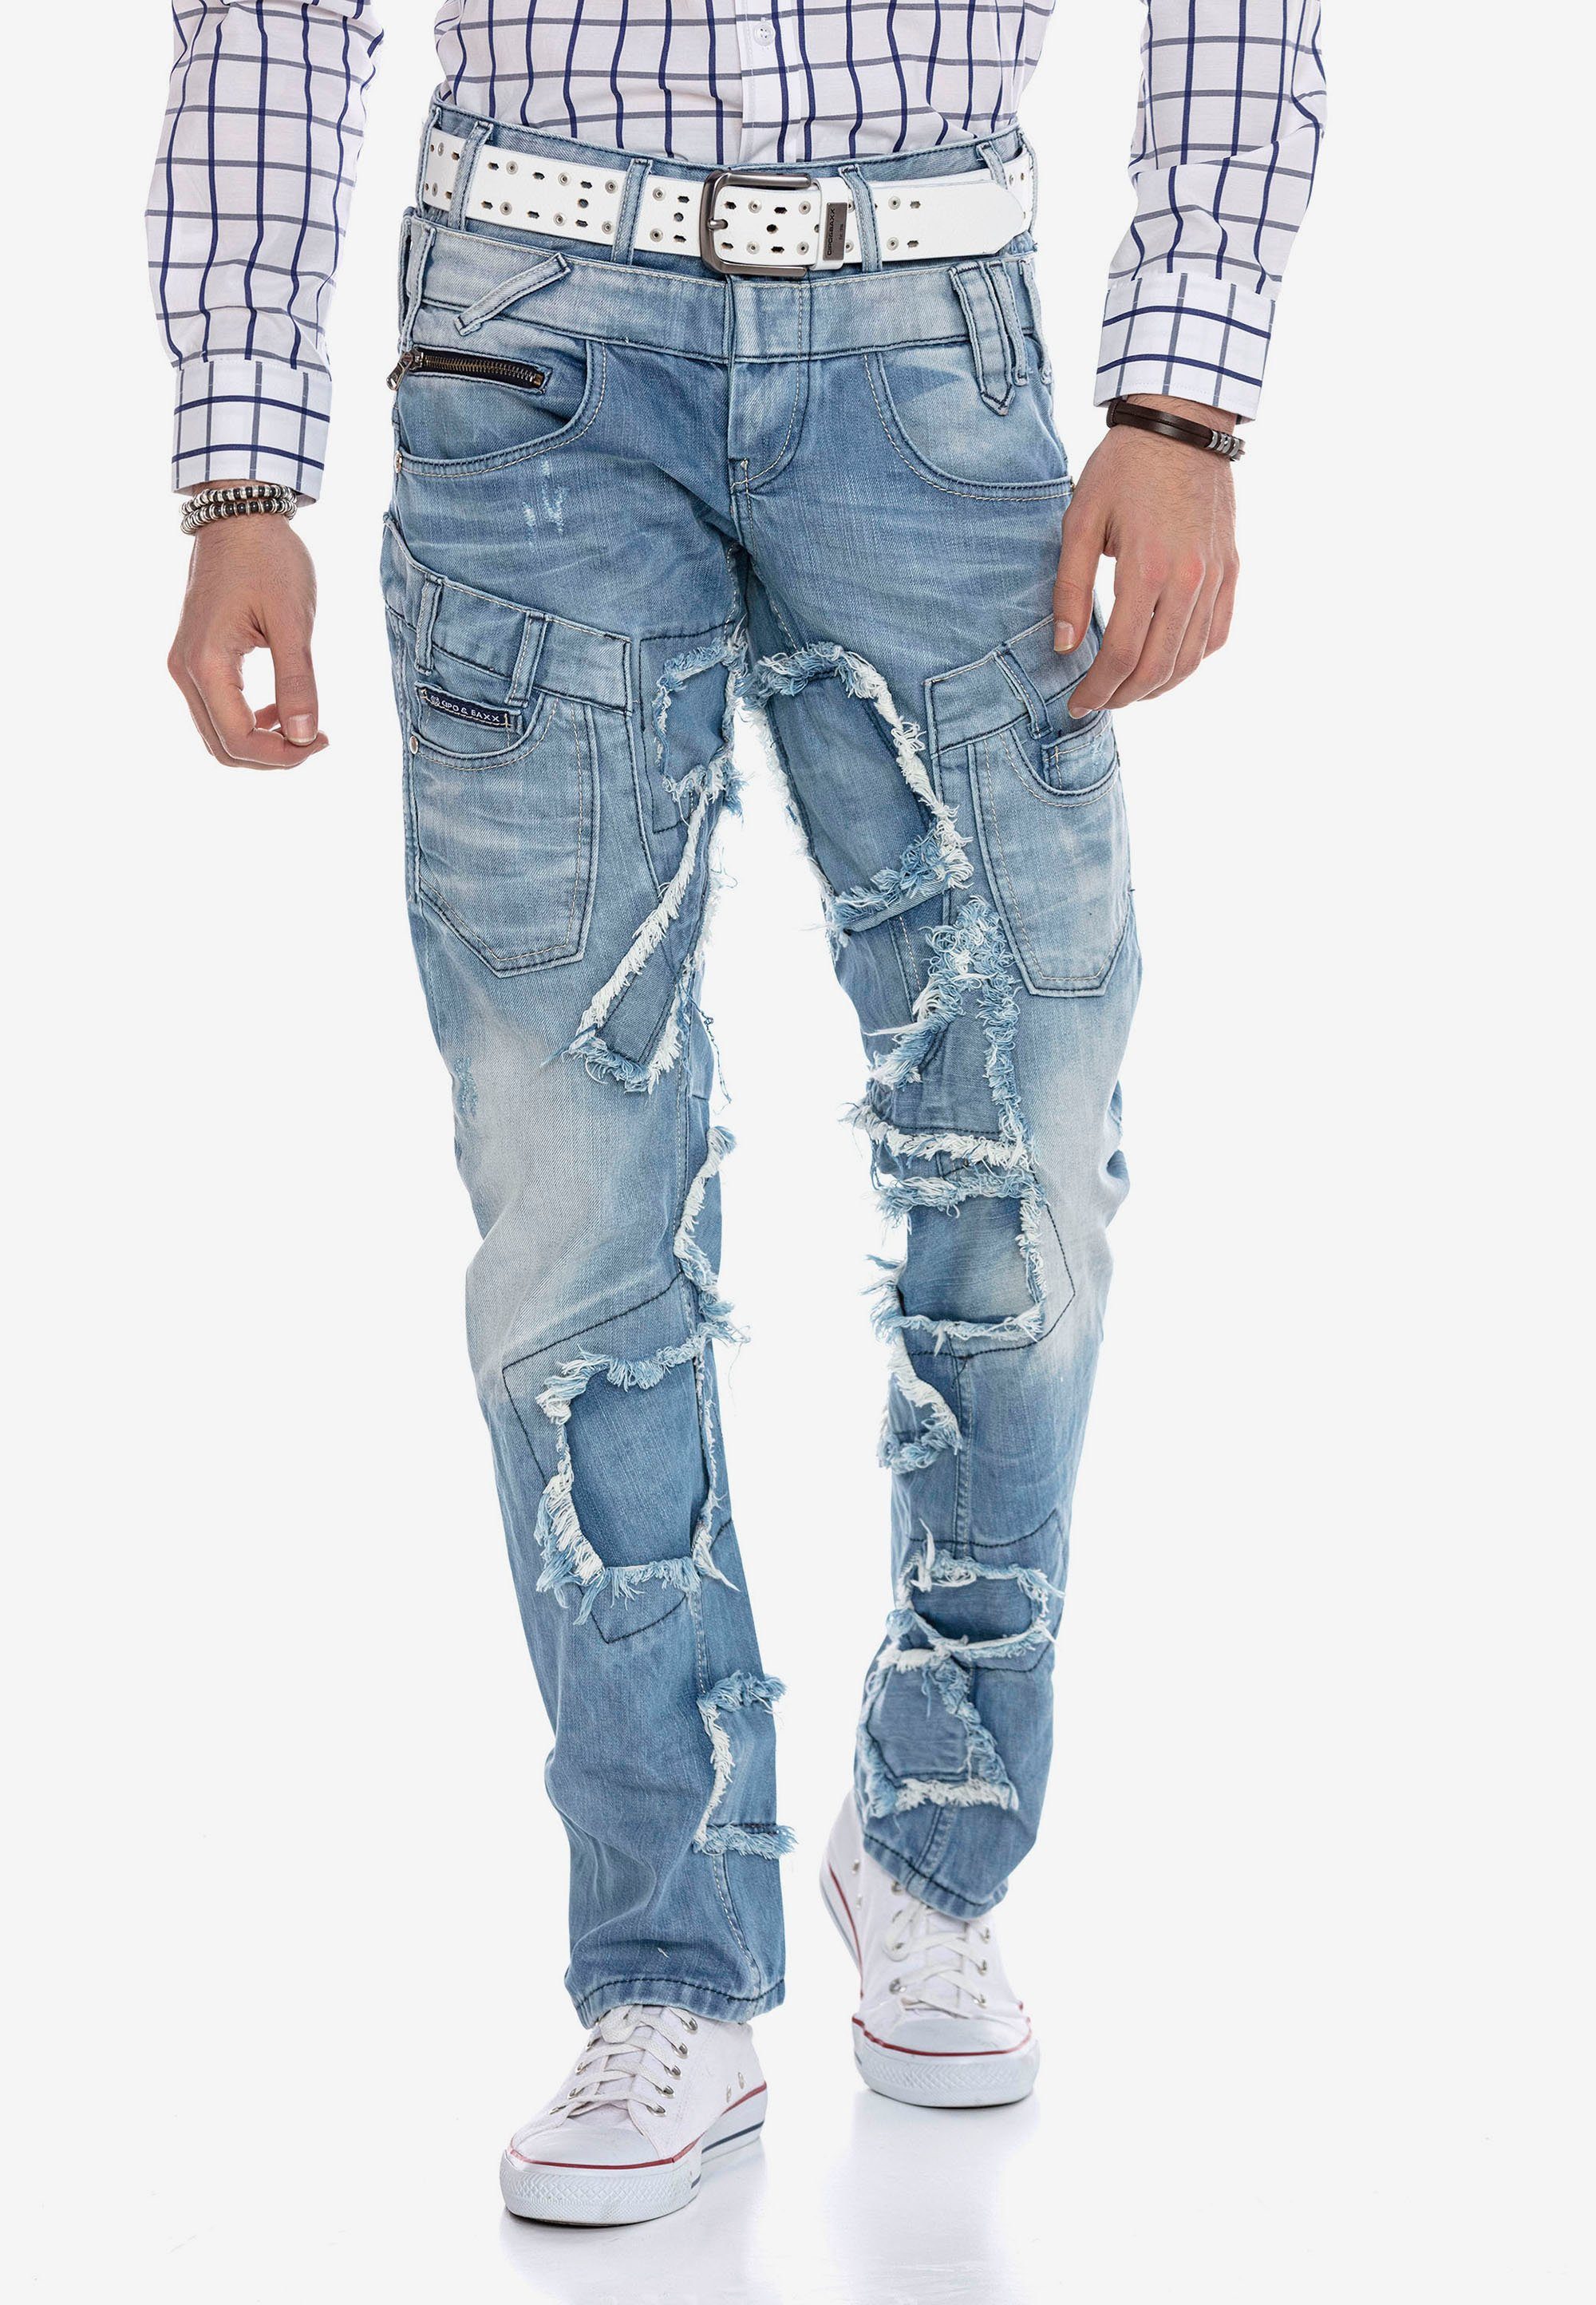 Patchwork-Design im Jeans & Baxx Bequeme trendigen Cipo